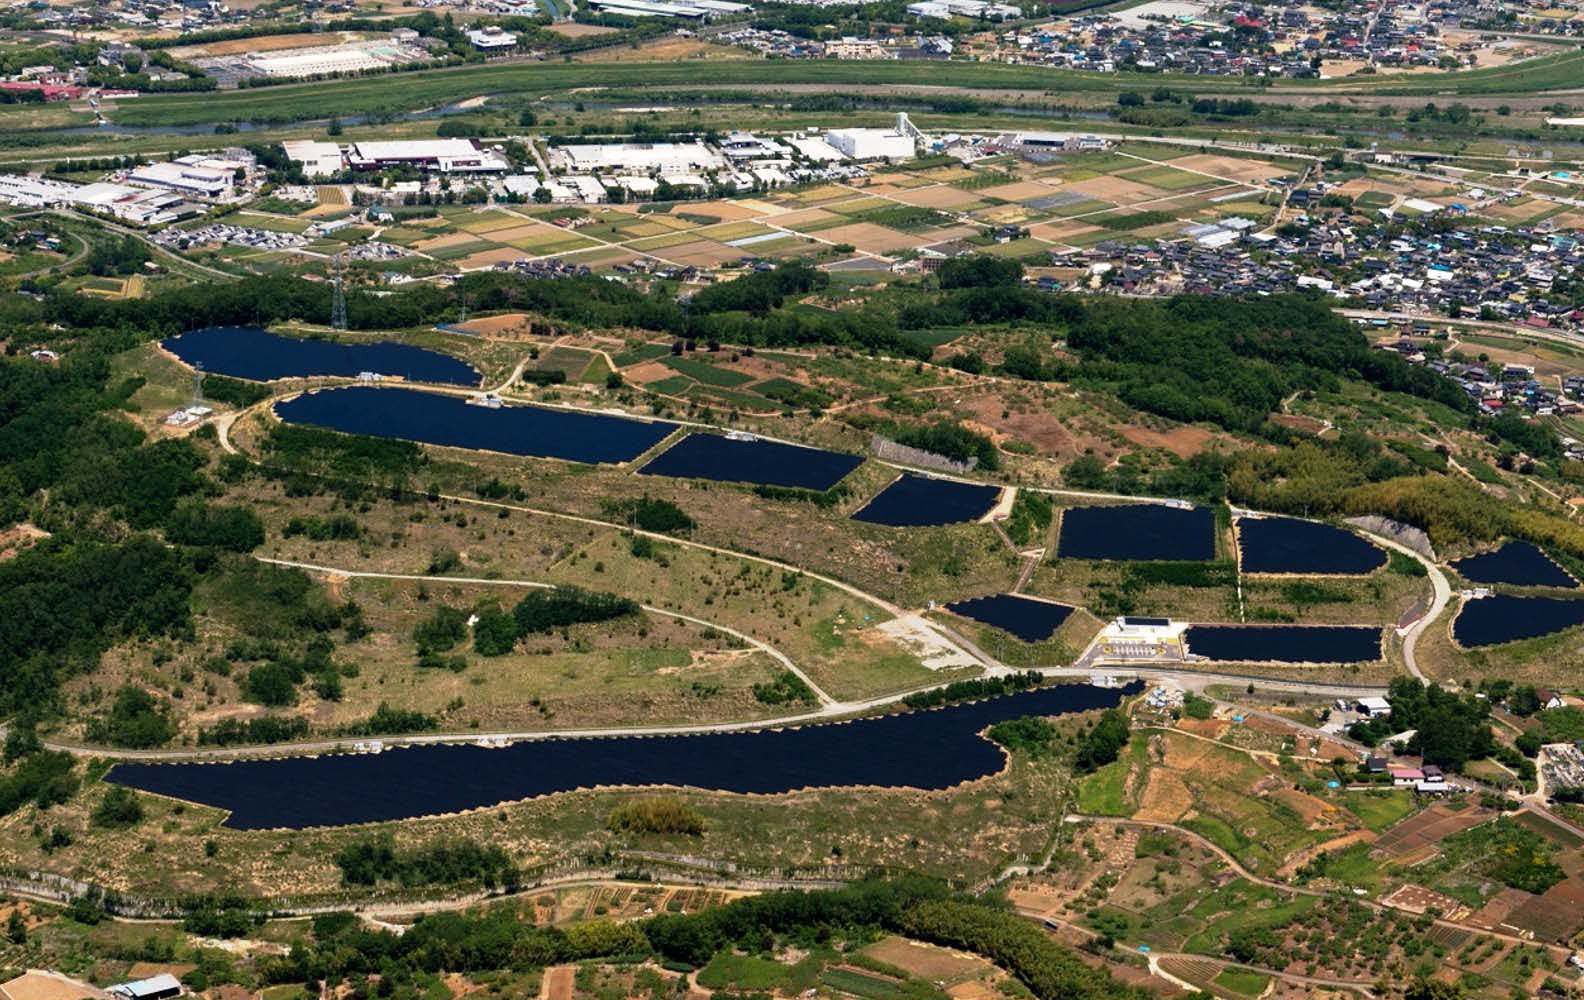 ゆめソーラー館 やまなし・米倉山太陽光発電所のサムネイル写真